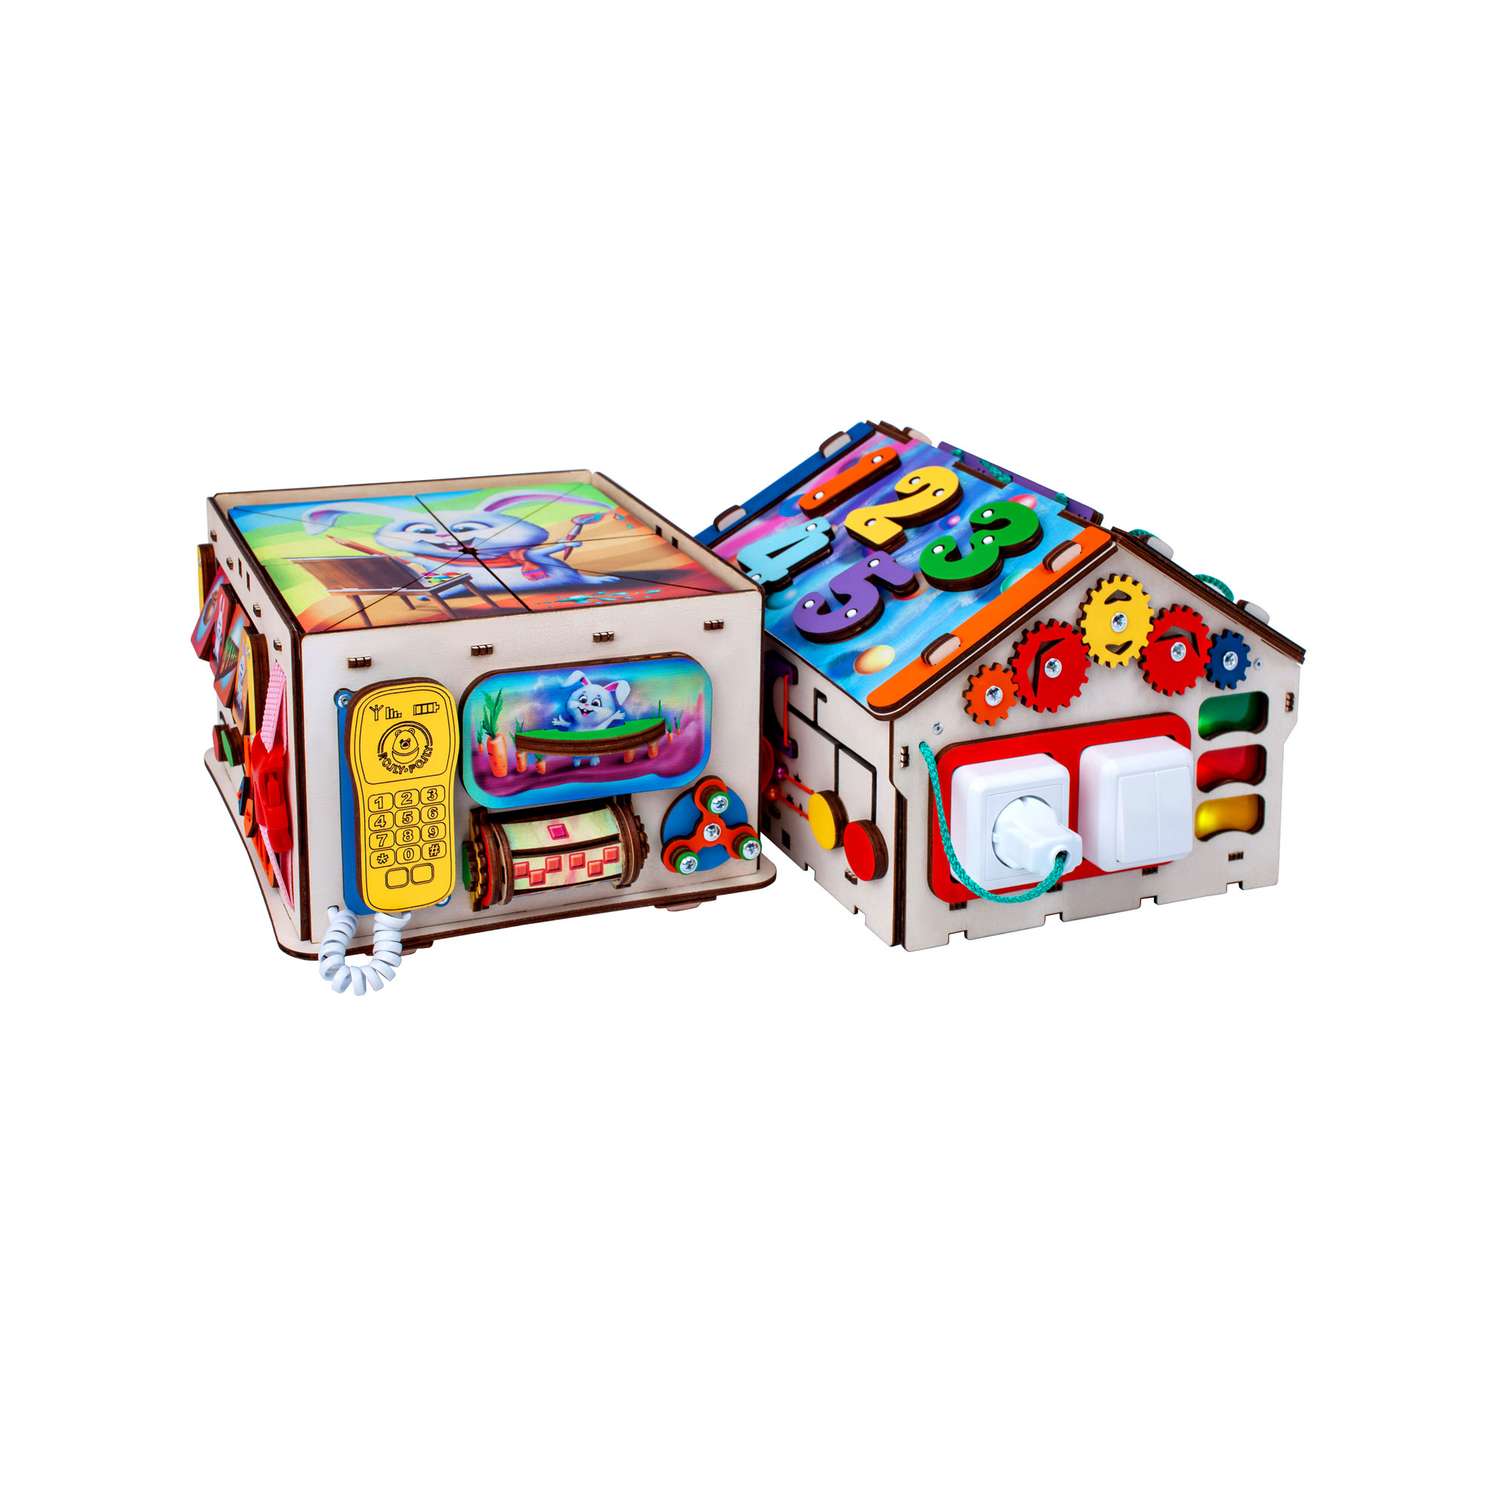 Бизиборд Jolly Kids развивающий бизидом и куб 2 в 1 со светом - фото 2